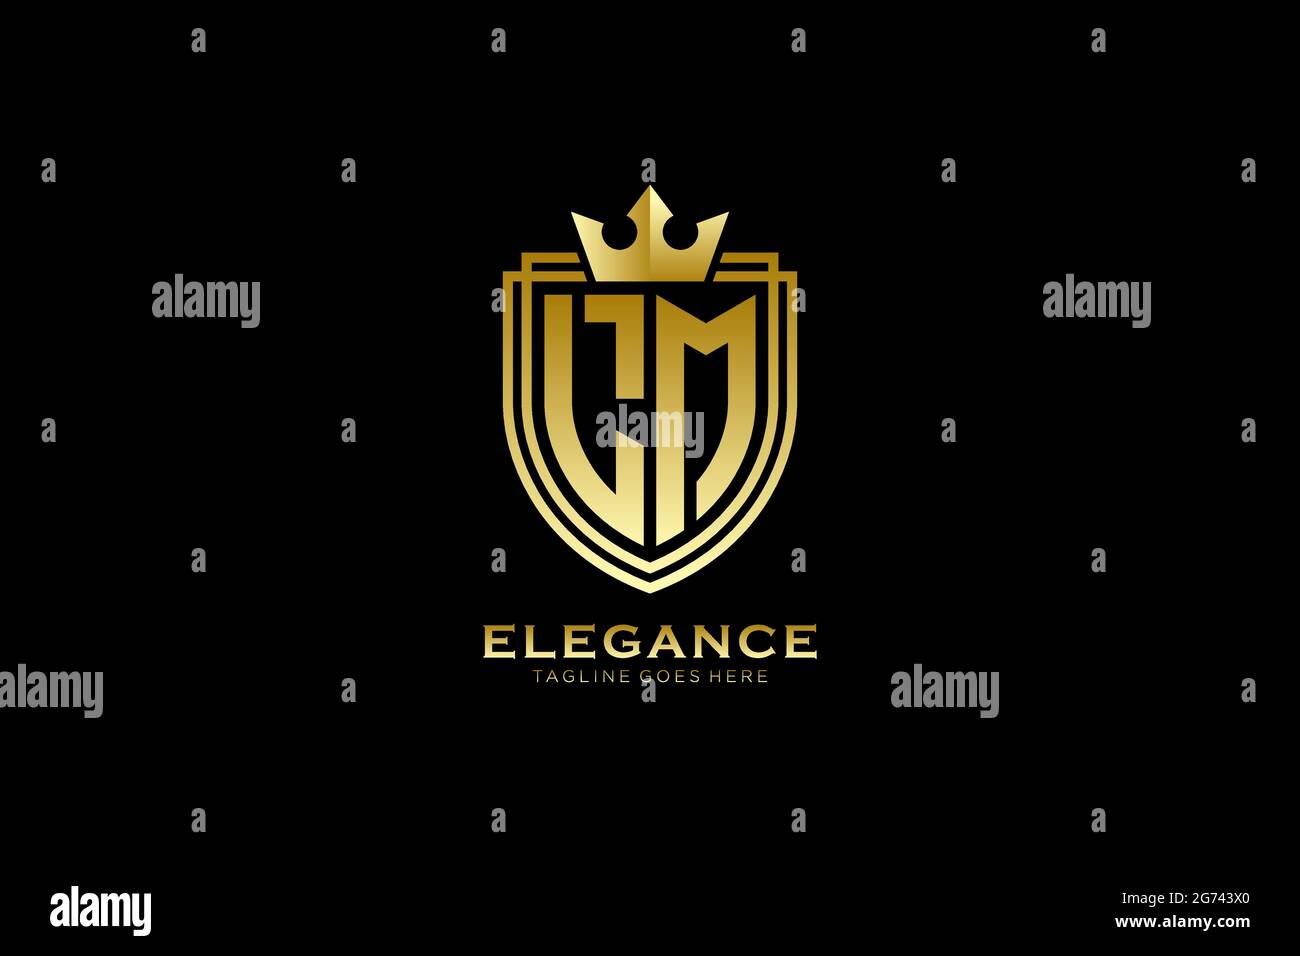 Lm Elegantes Luxus-Monogramm-Logo oder Badge-Vorlage mit Rollen und königlicher Krone - perfekt für luxuriöse Branding-Projekte Stock Vektor